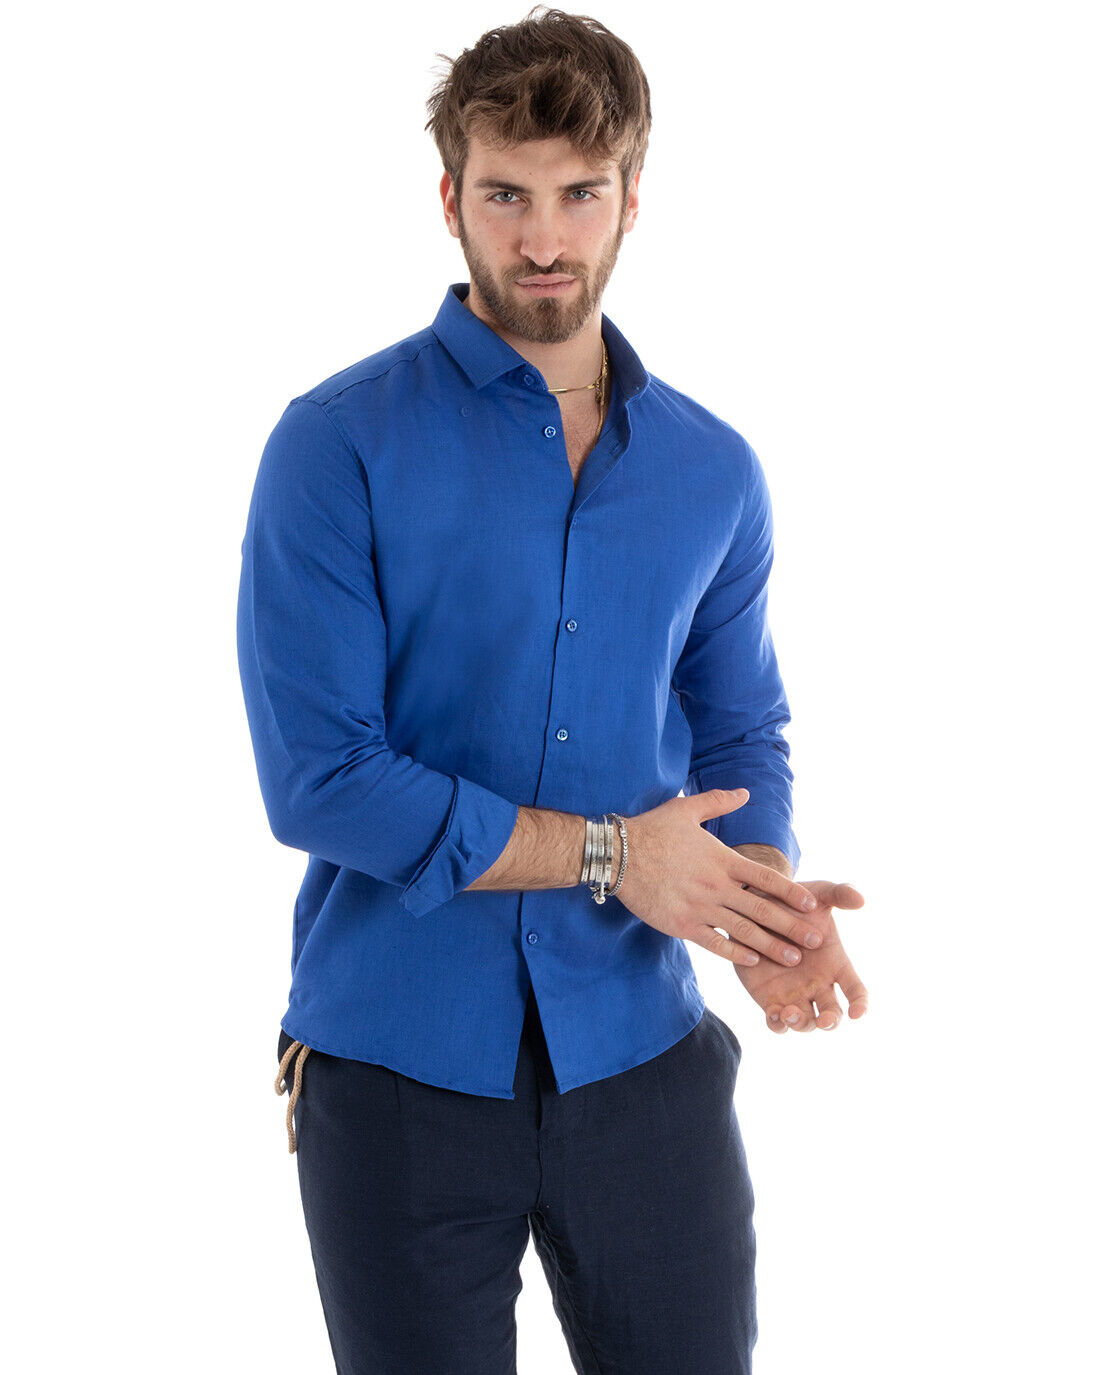 Camicia Uomo Con Colletto Tinta Unita Blu Royal Lino Manica Lunga Casual Sartoriale GIOSAL-C2717A